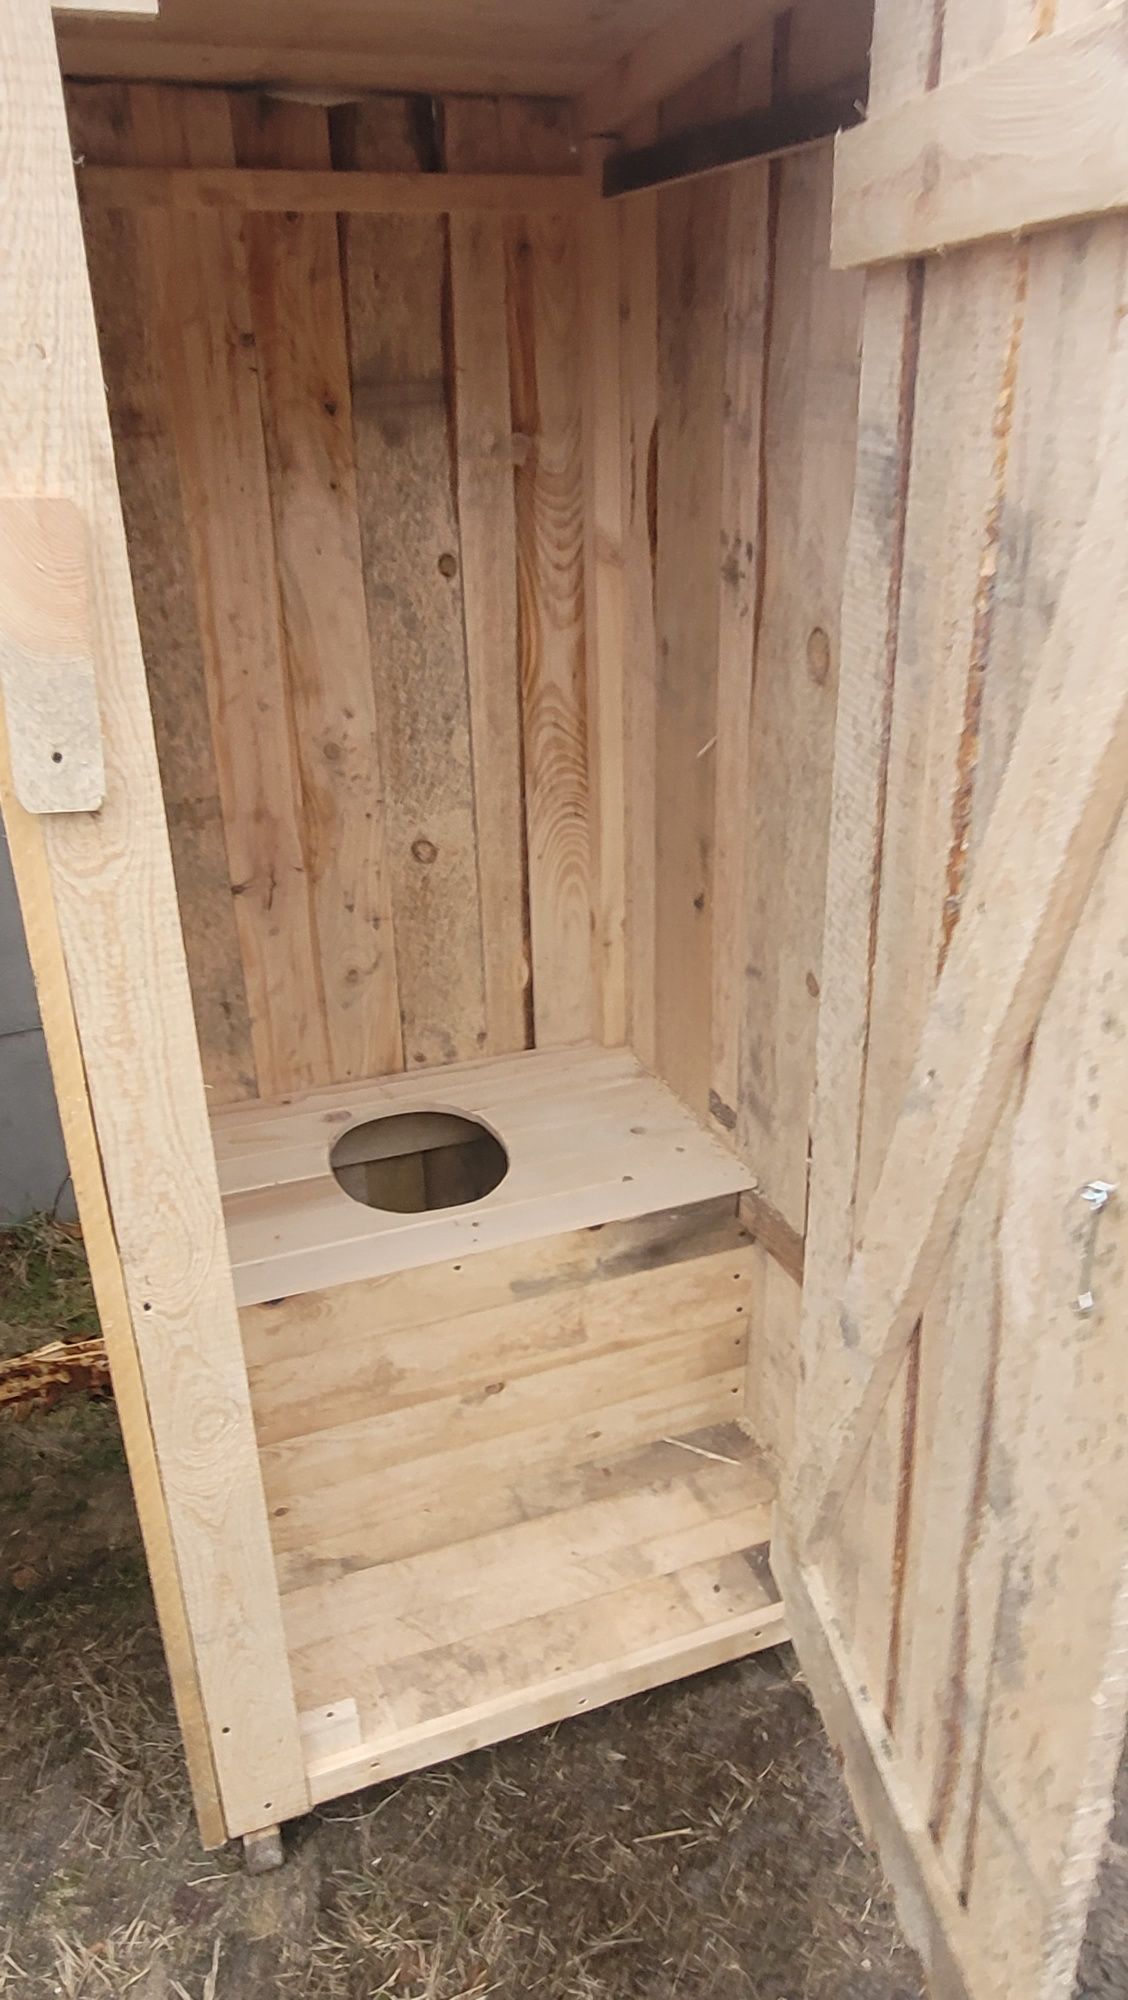 Toaleta drewniana ZWYKŁA przenośna kibelek WC transport